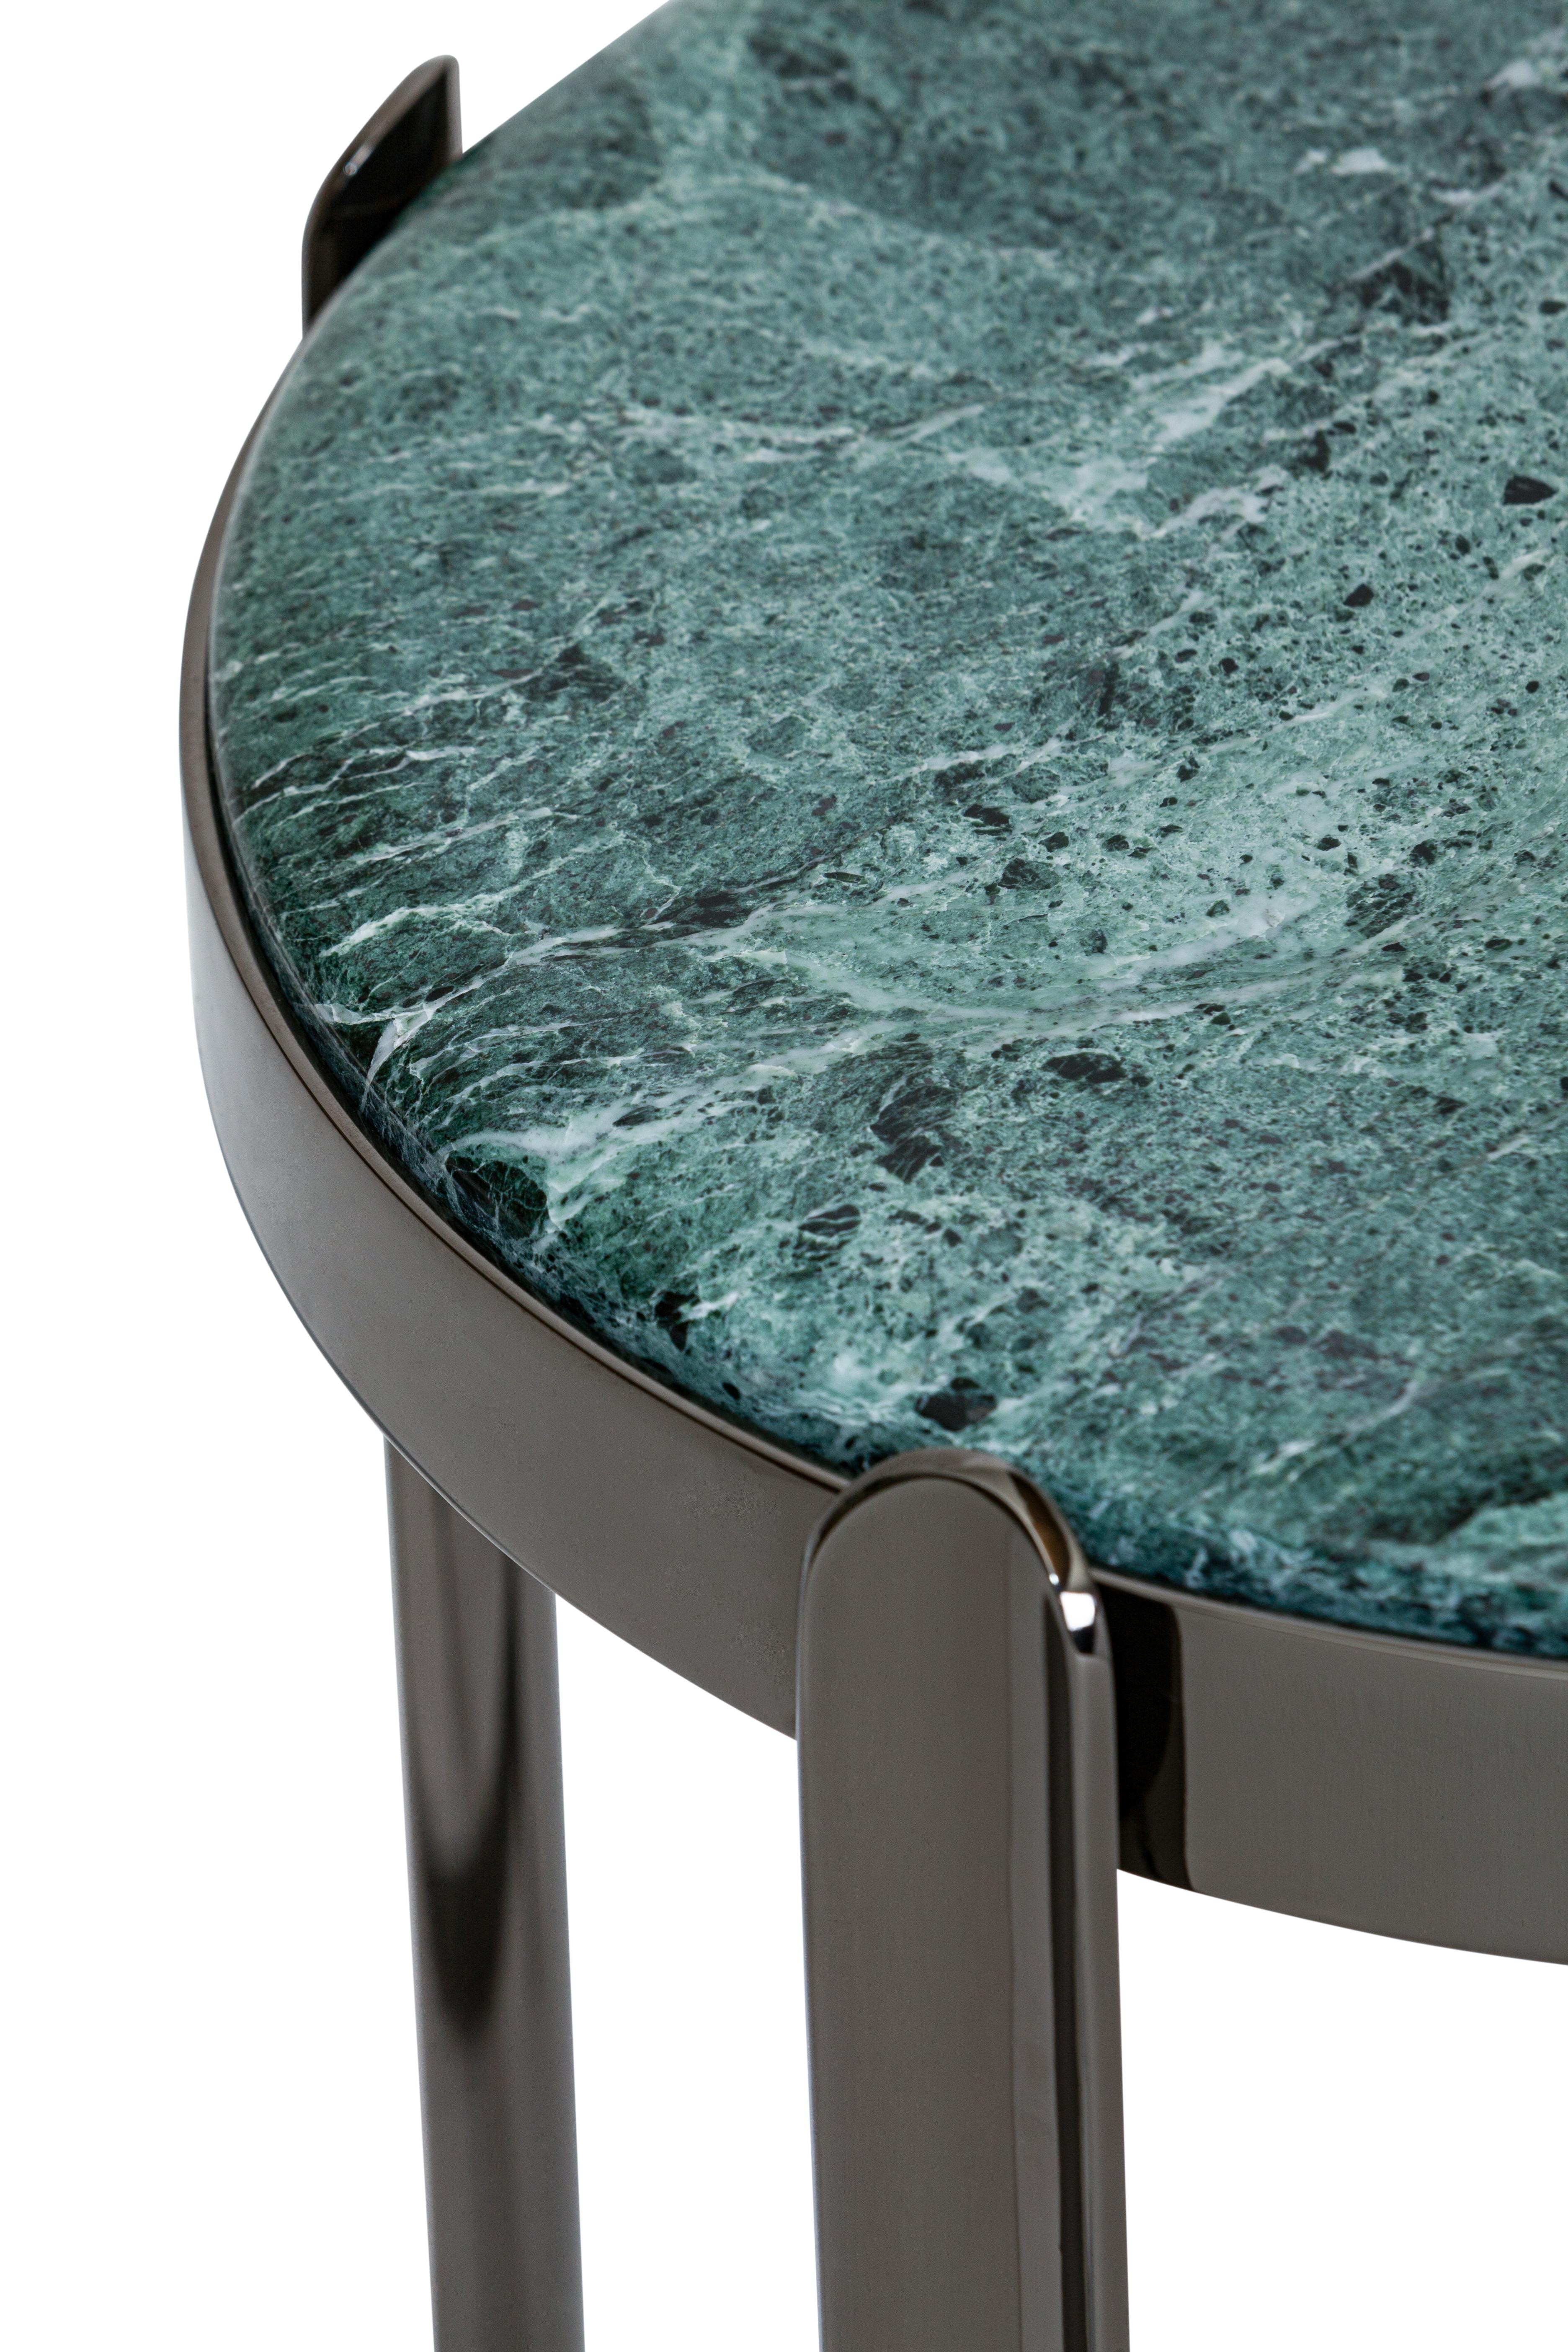 Table d'appoint en nickel vert alpin de la Maison Elie Saab Art Déco du 21e siècle, Italie

Nommées d'après leur position stratégique dans les intérieurs, les tables basses et consoles Zenith ajoutent un glamour raffiné et contemporain à chaque